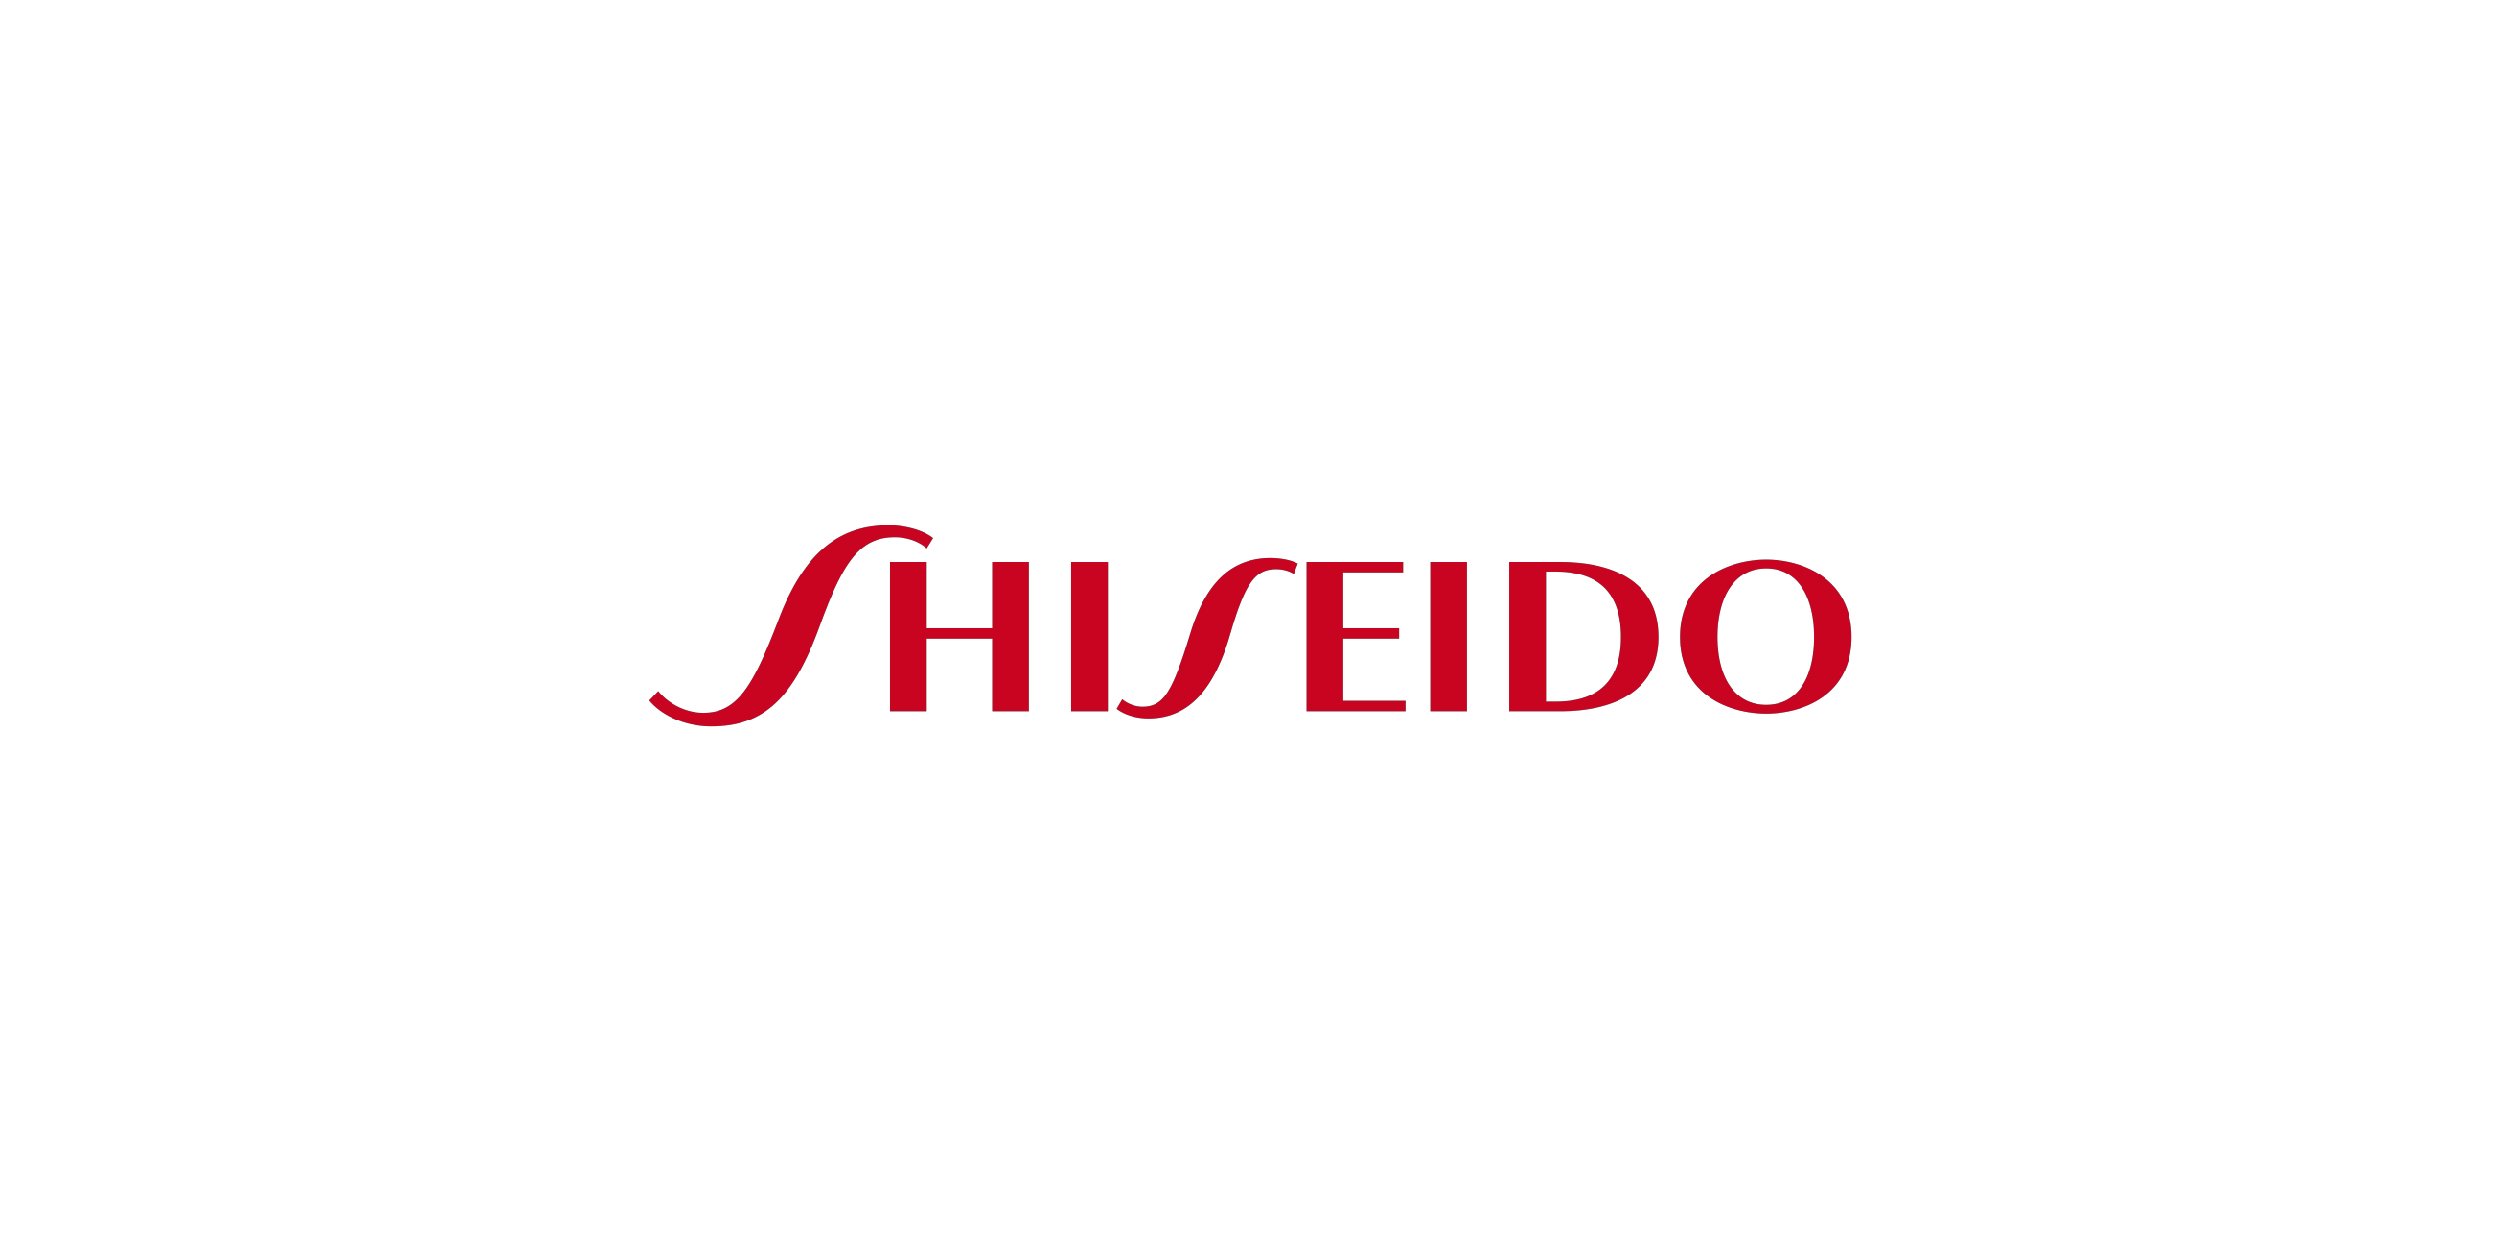 Shiseido Hong Kong unveils innovative AI-based campaign  